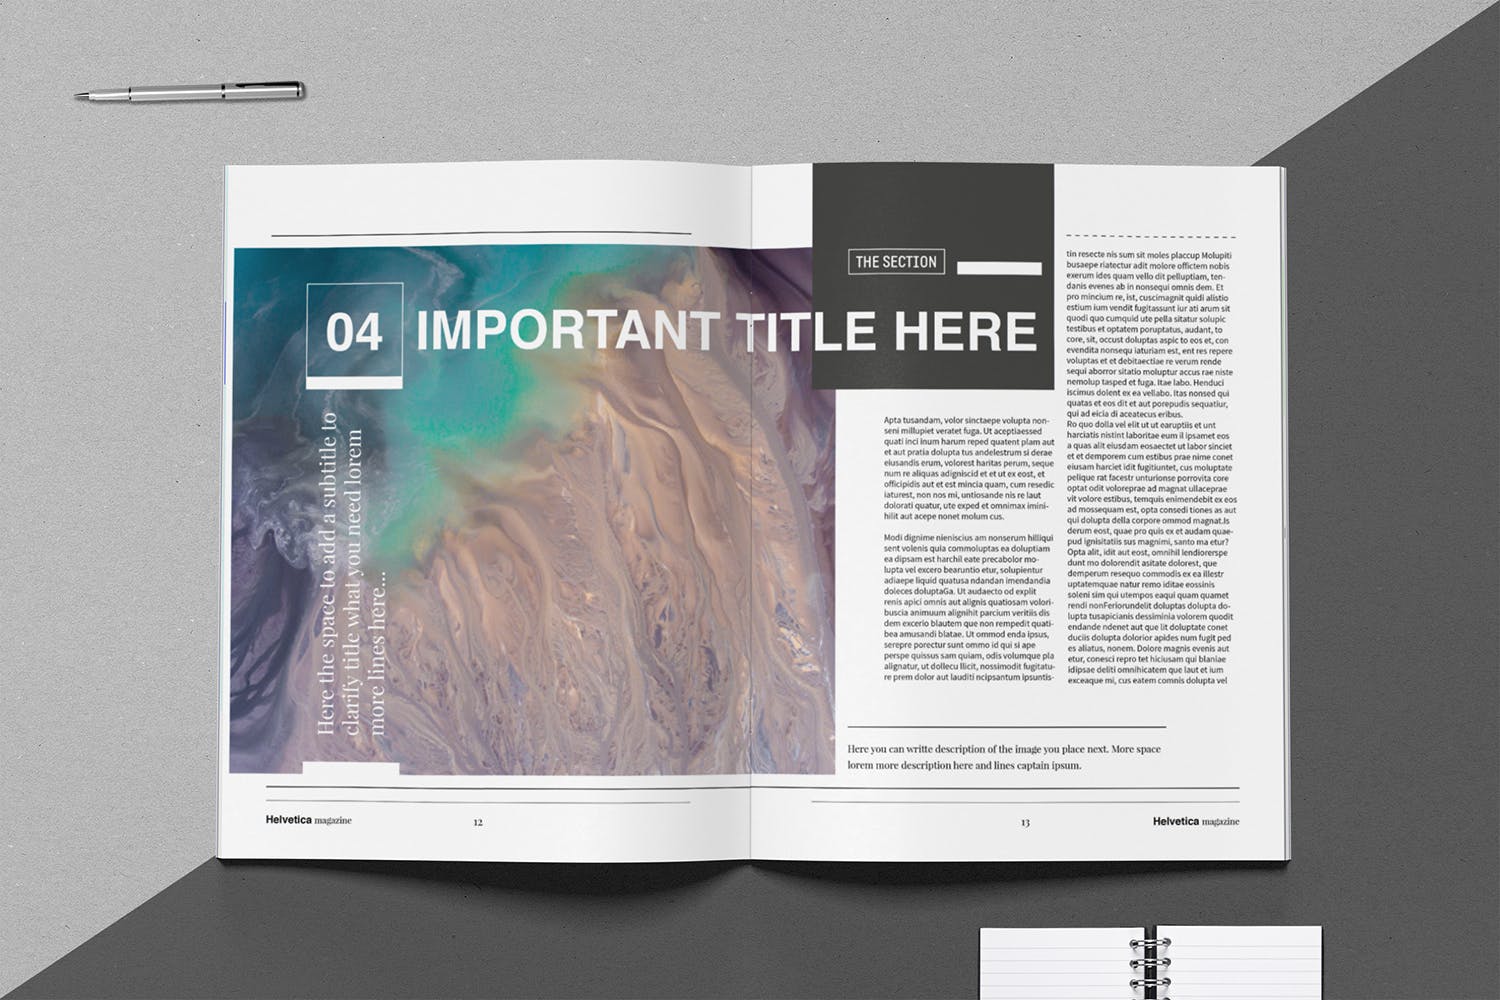 时尚行业产品评测杂志Indesign模板下载 Helvetica Magazine Indesign Template插图7